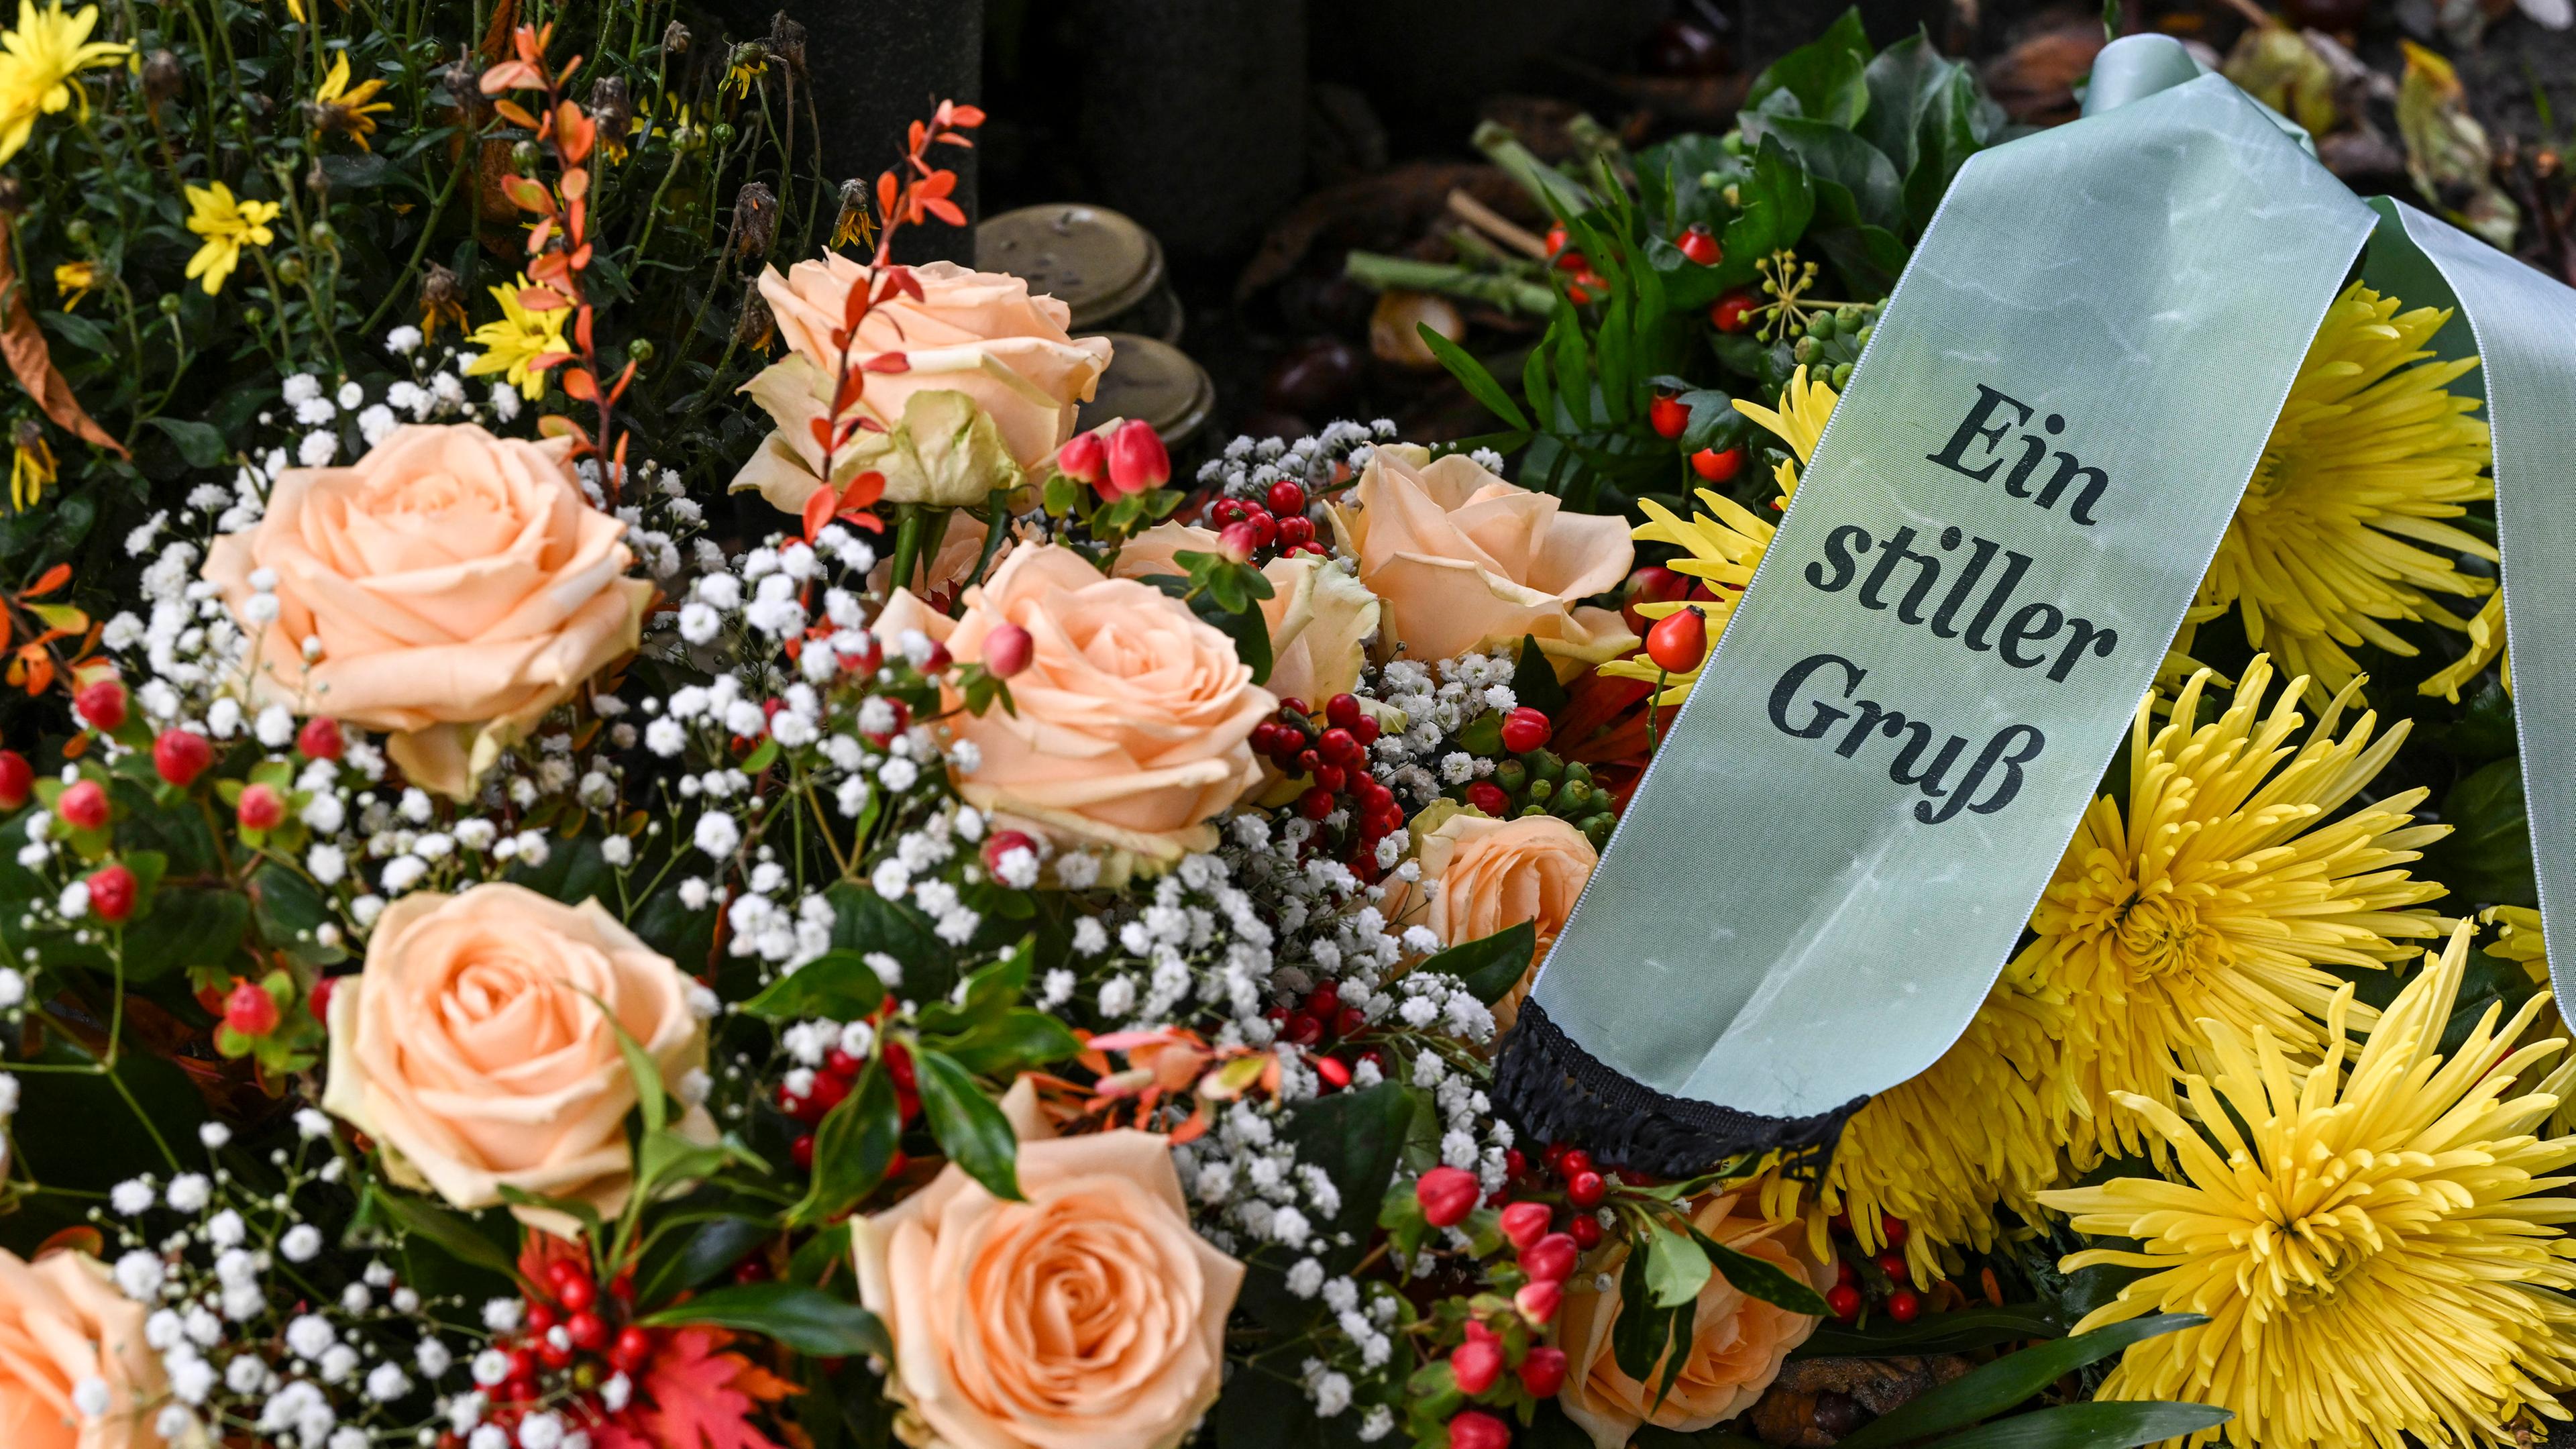 Viele Blumen in einem Strauß mit einem Trauerschleife mit der Aufschrift "Ein stiller Gruß".